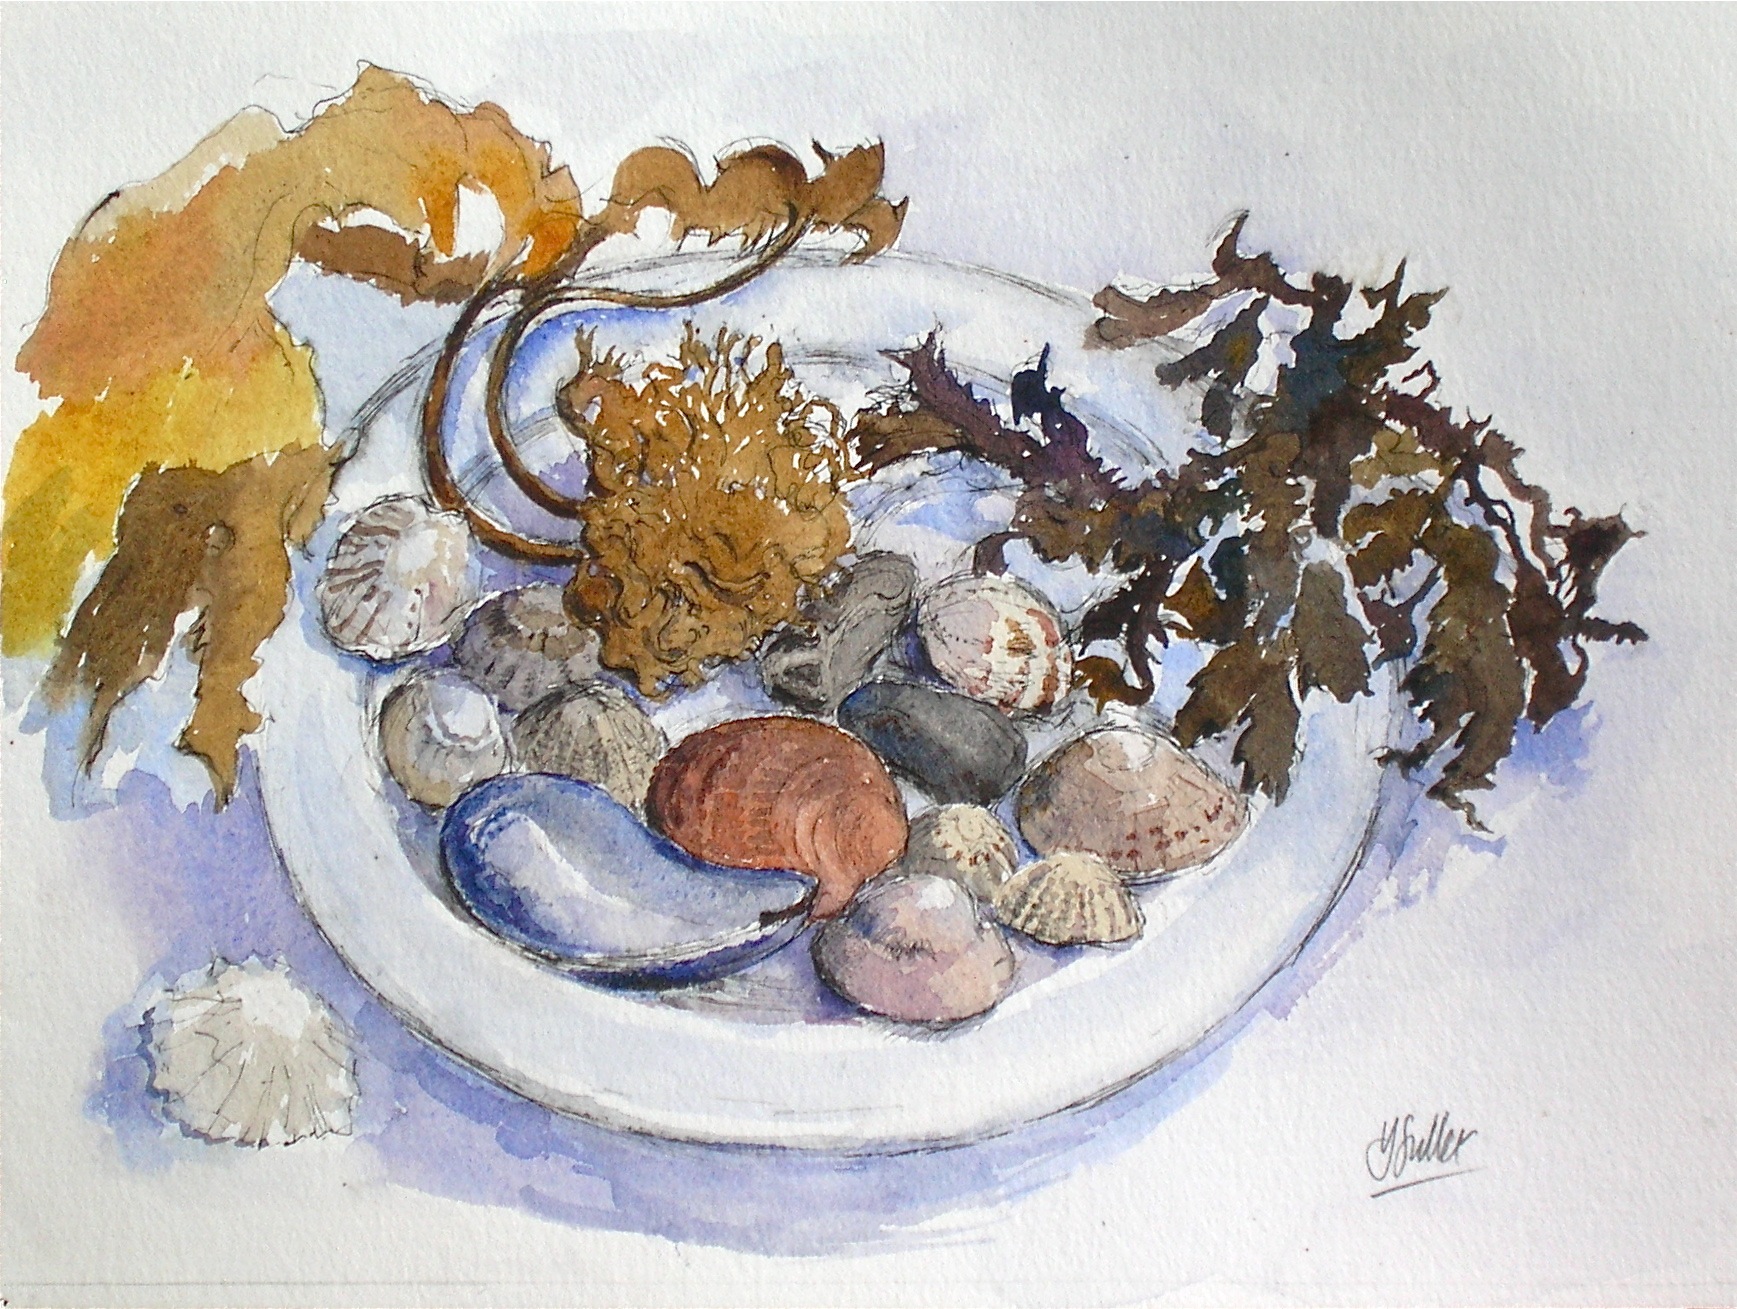 Shells and seaweed